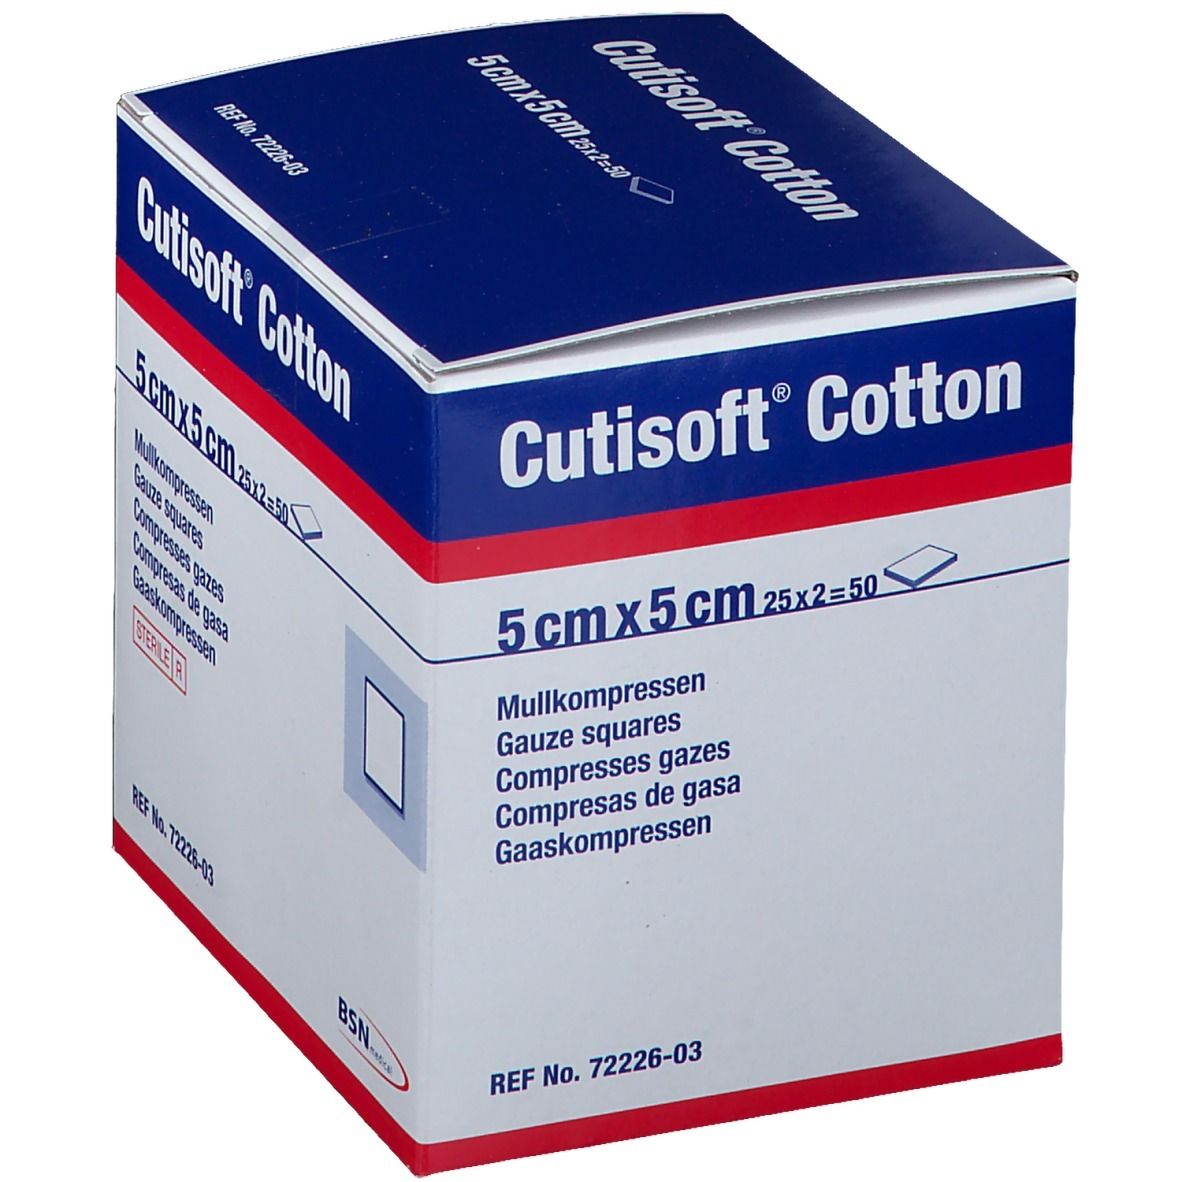 Cutisoft® Cotton steril 5 cm x 5 cm